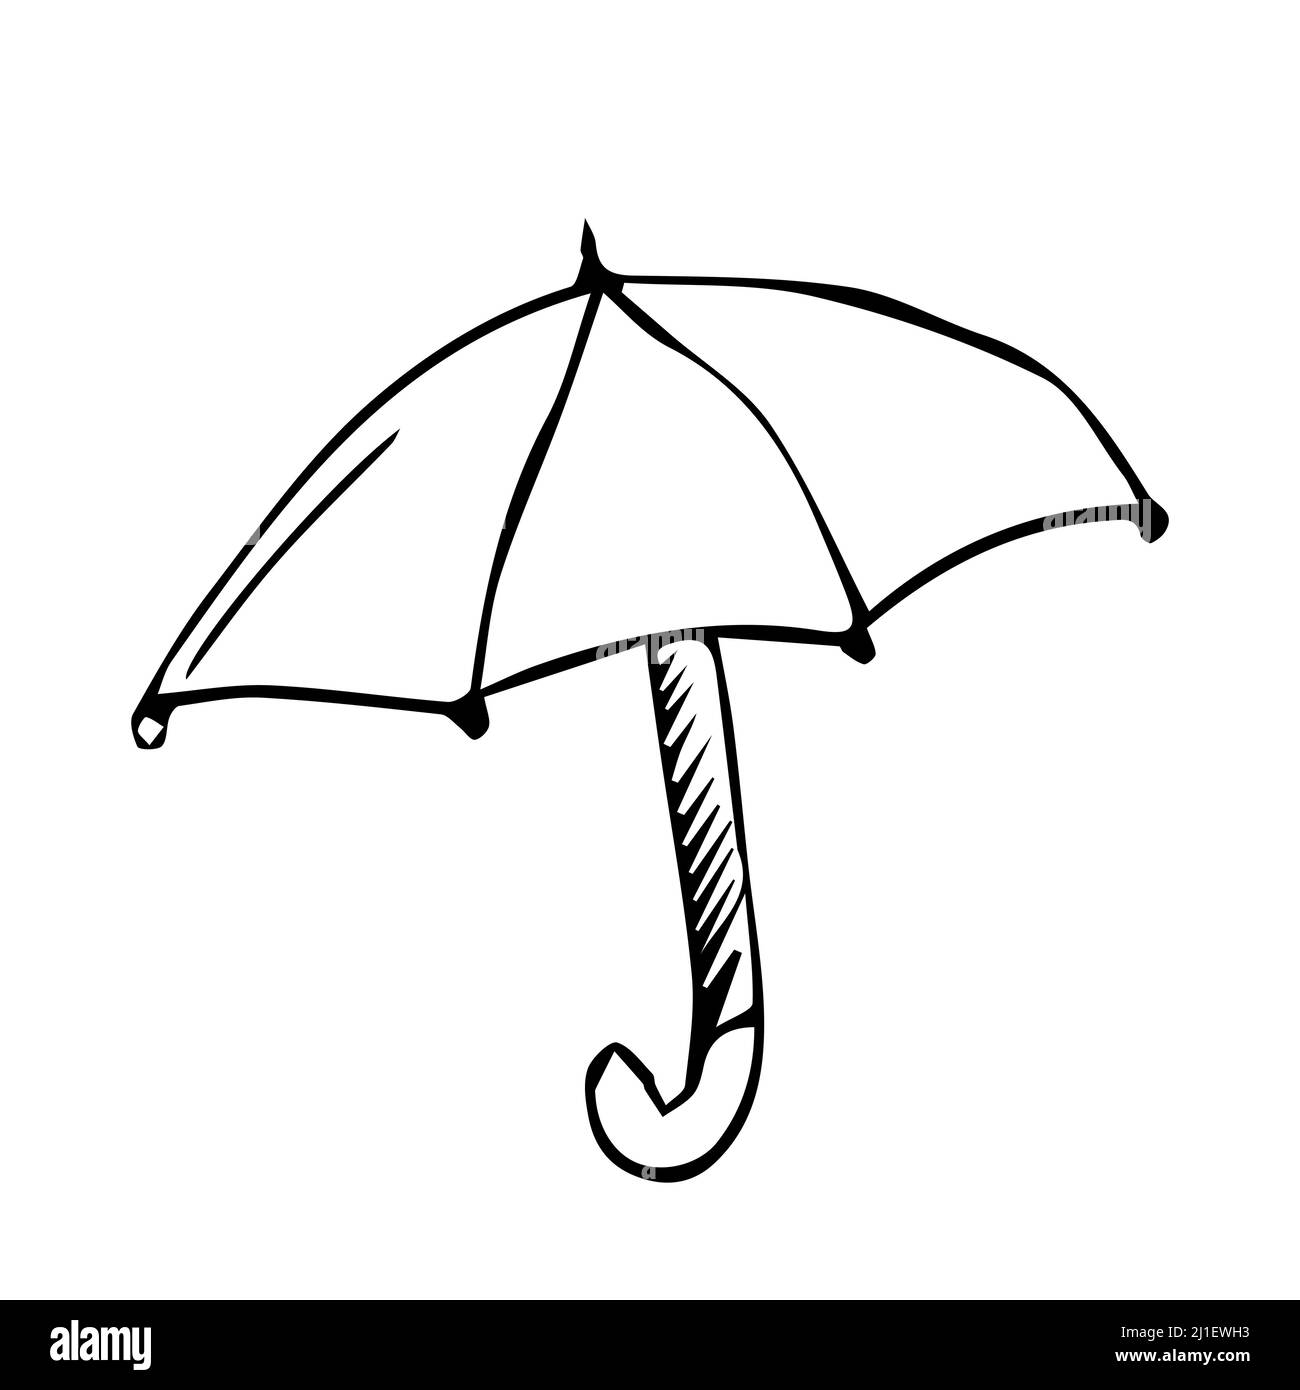 Vektorschirm. Doodle Regenschirm gezeichnet mit schwarzen Linien. Schwarz  lackierter Regenschirm auf weißem Hintergrund Stock-Vektorgrafik - Alamy